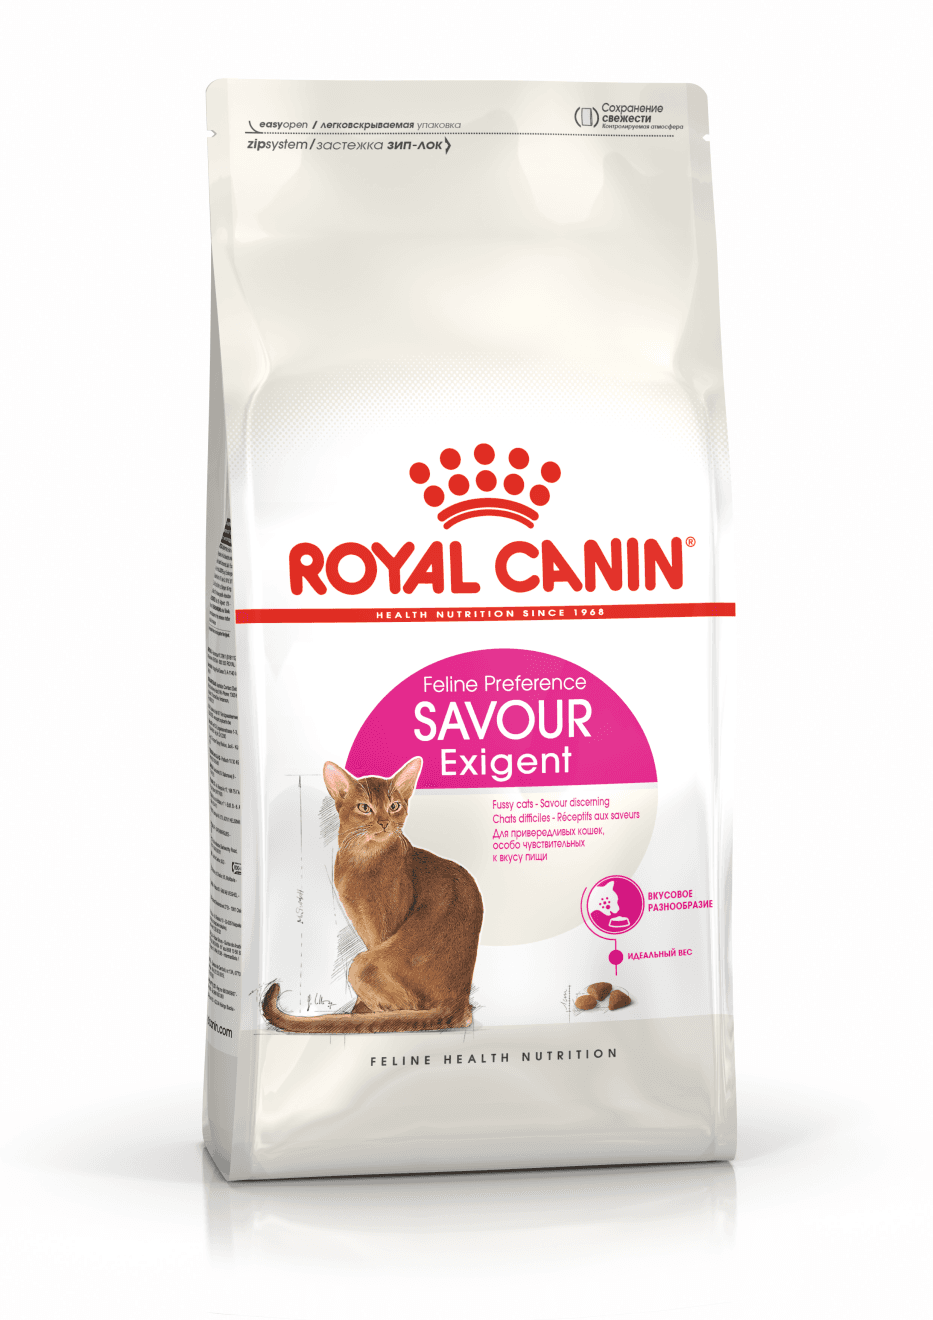 ROYAL CANIN Suva hrana za mačke Exigent savour sensation 400g